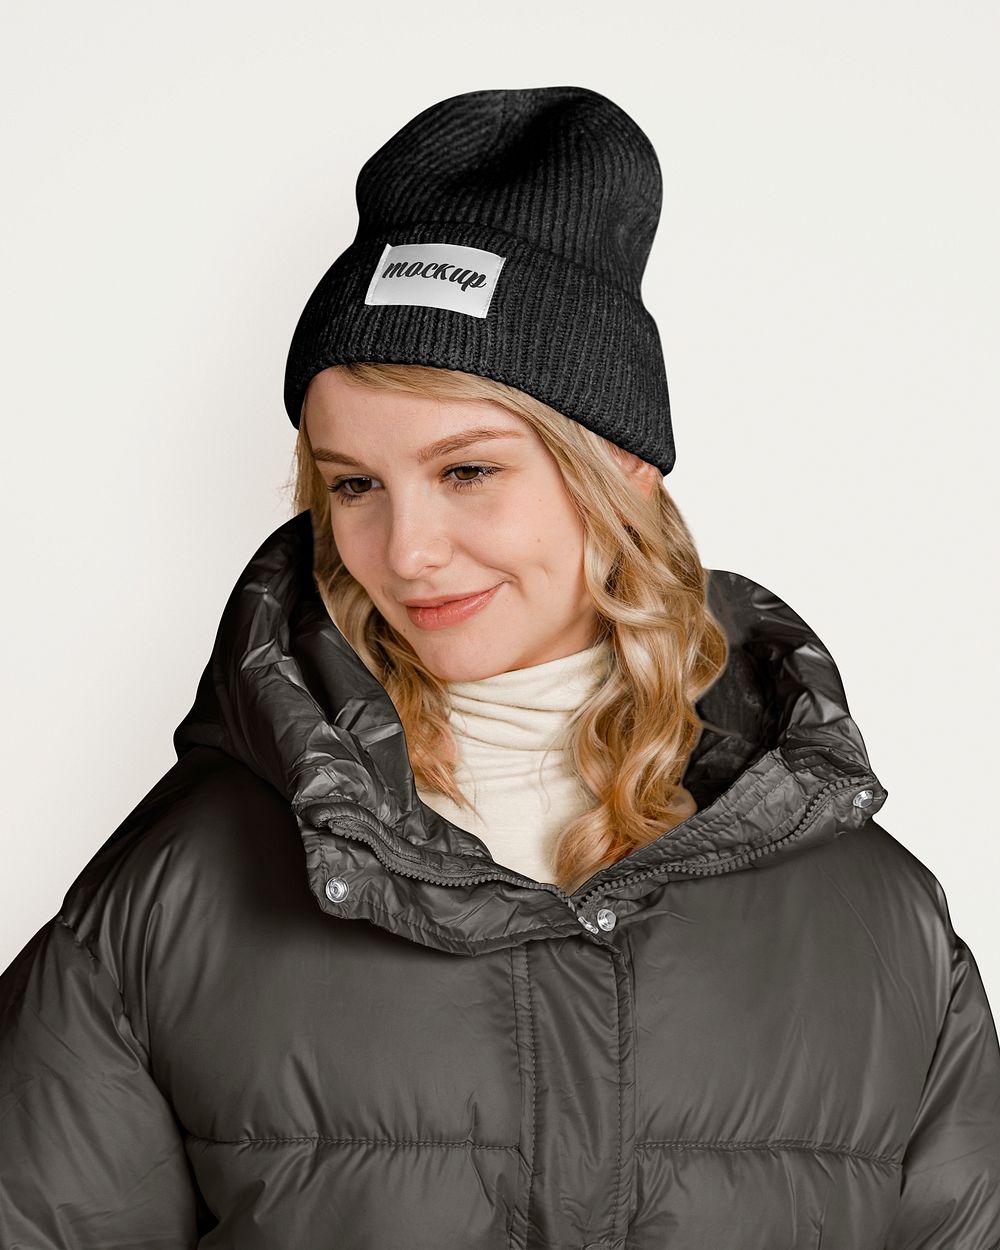 Winter jacket & hat mockup, women's apparel psd